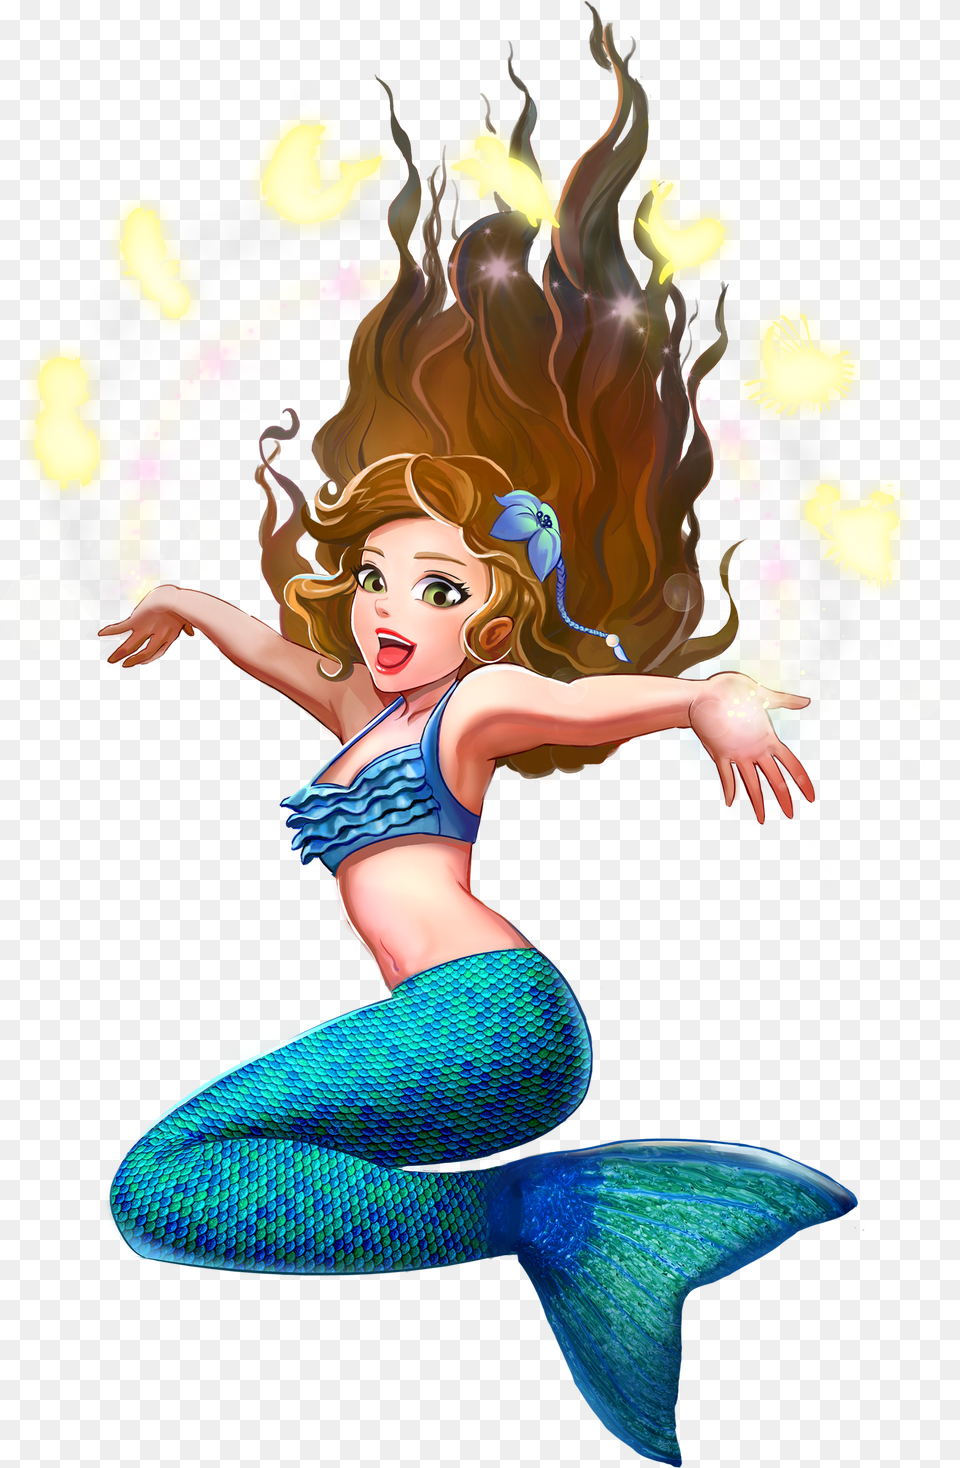 Mermaid Wiki Mermaid Dark Hair Green Eyes, Person, Dancing, Face, Head Png Image